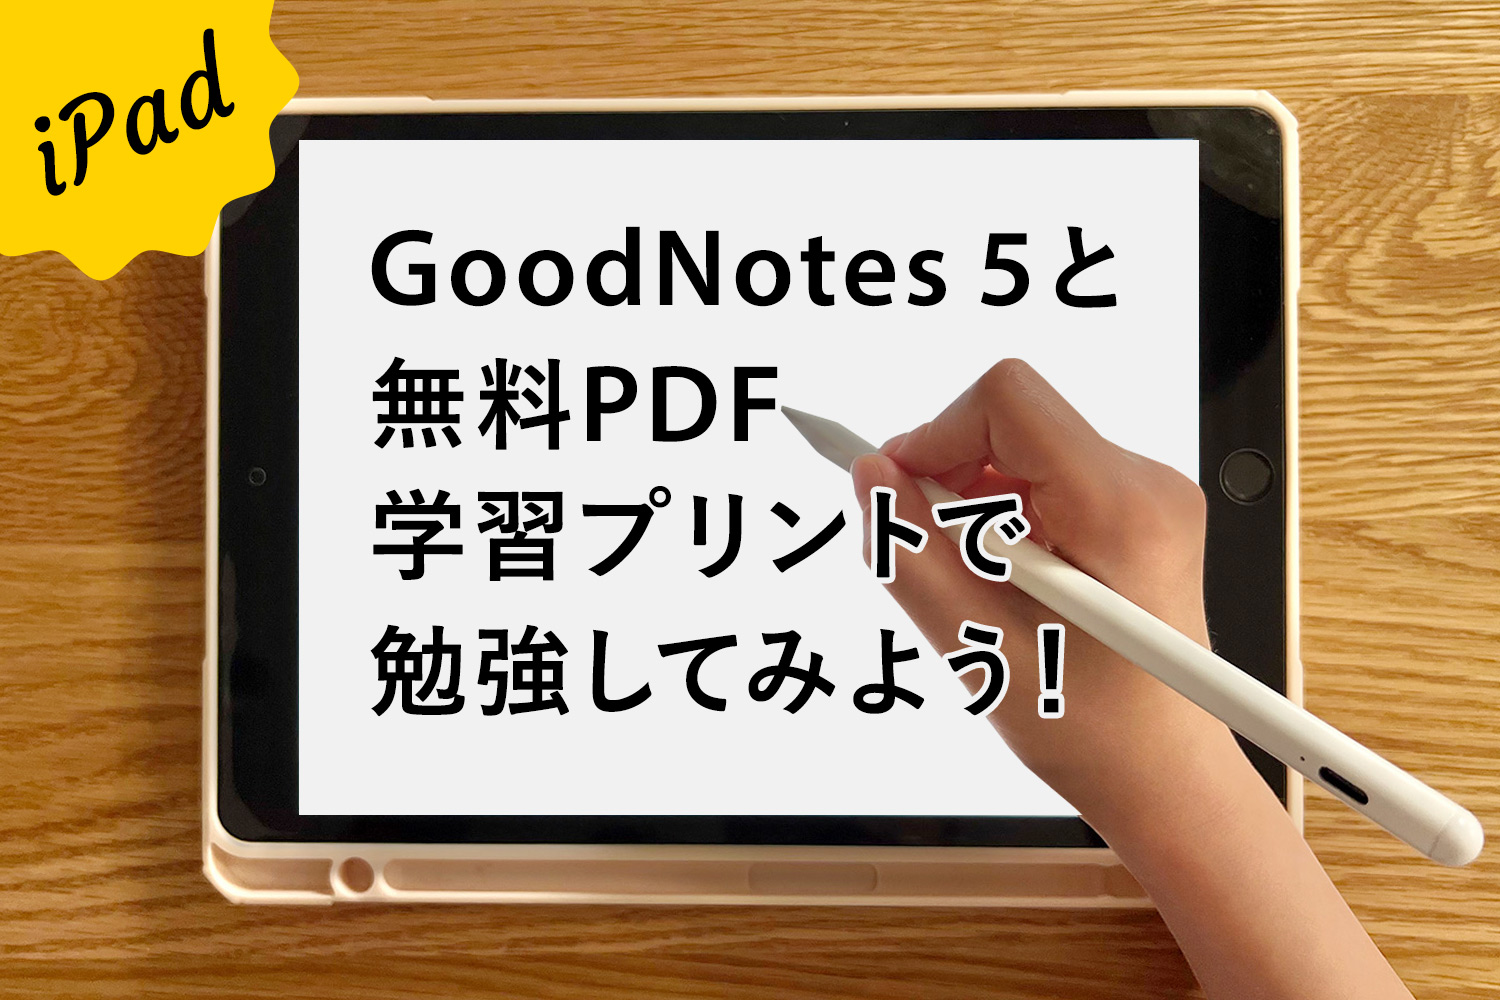 【iPadで家庭学習】GoodNotes 5と無料PDF学習プリントで勉強してみよう！【子供編】